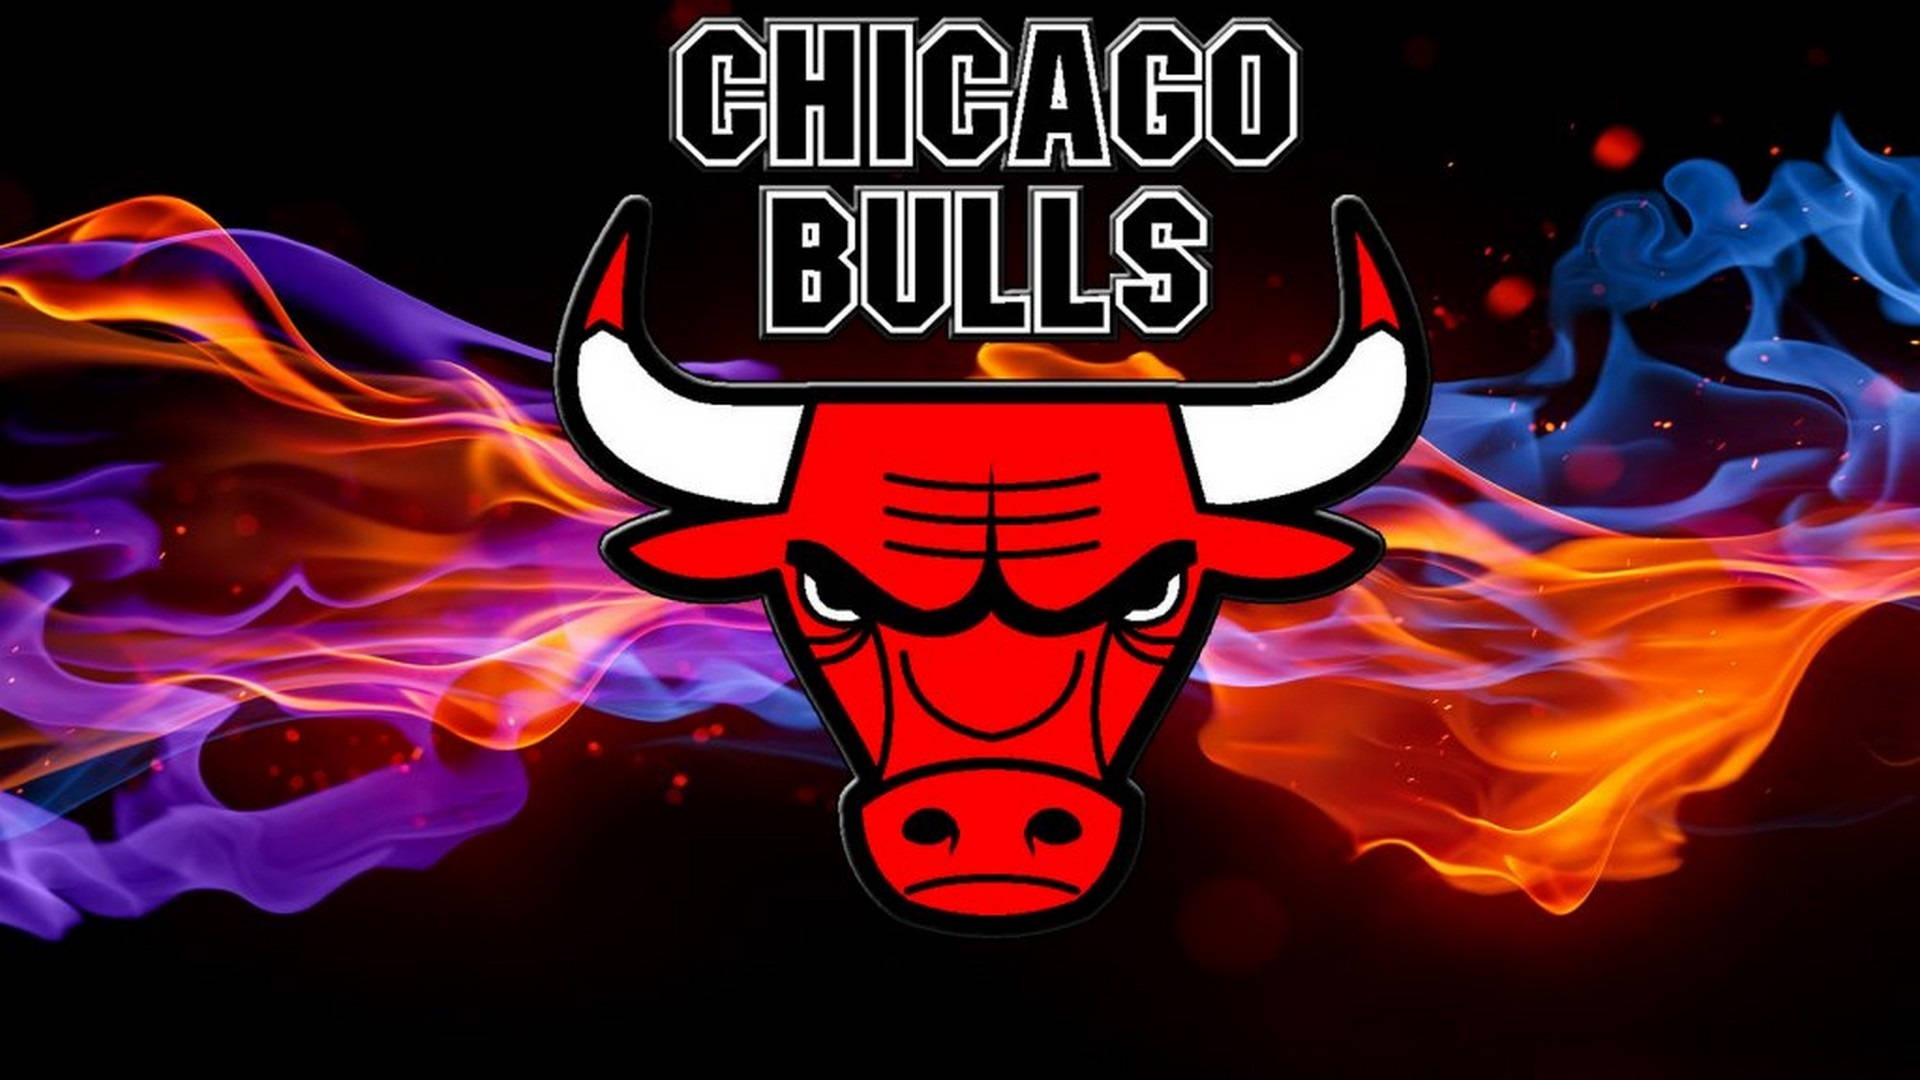 Chicago Bulls Stylised Bull Illustration